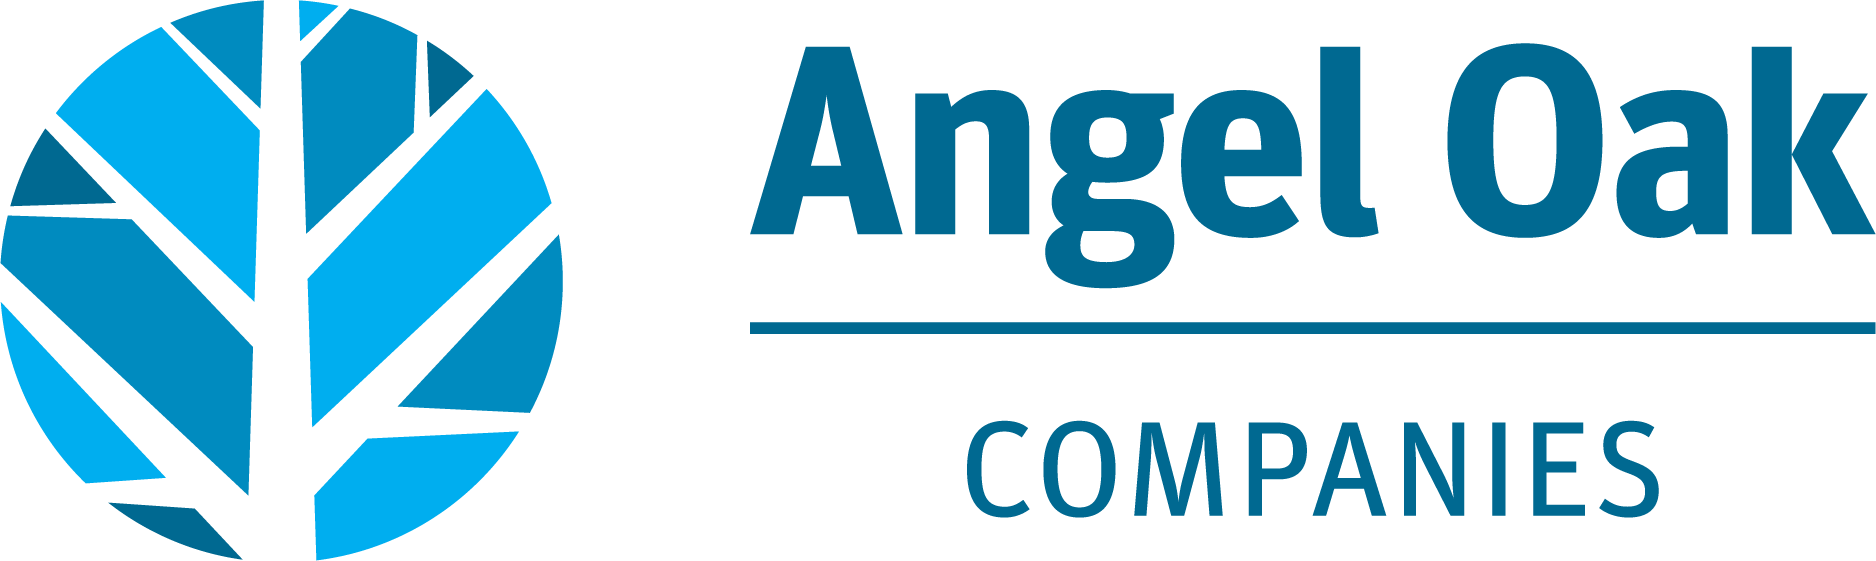 Angel Oak Companies logo